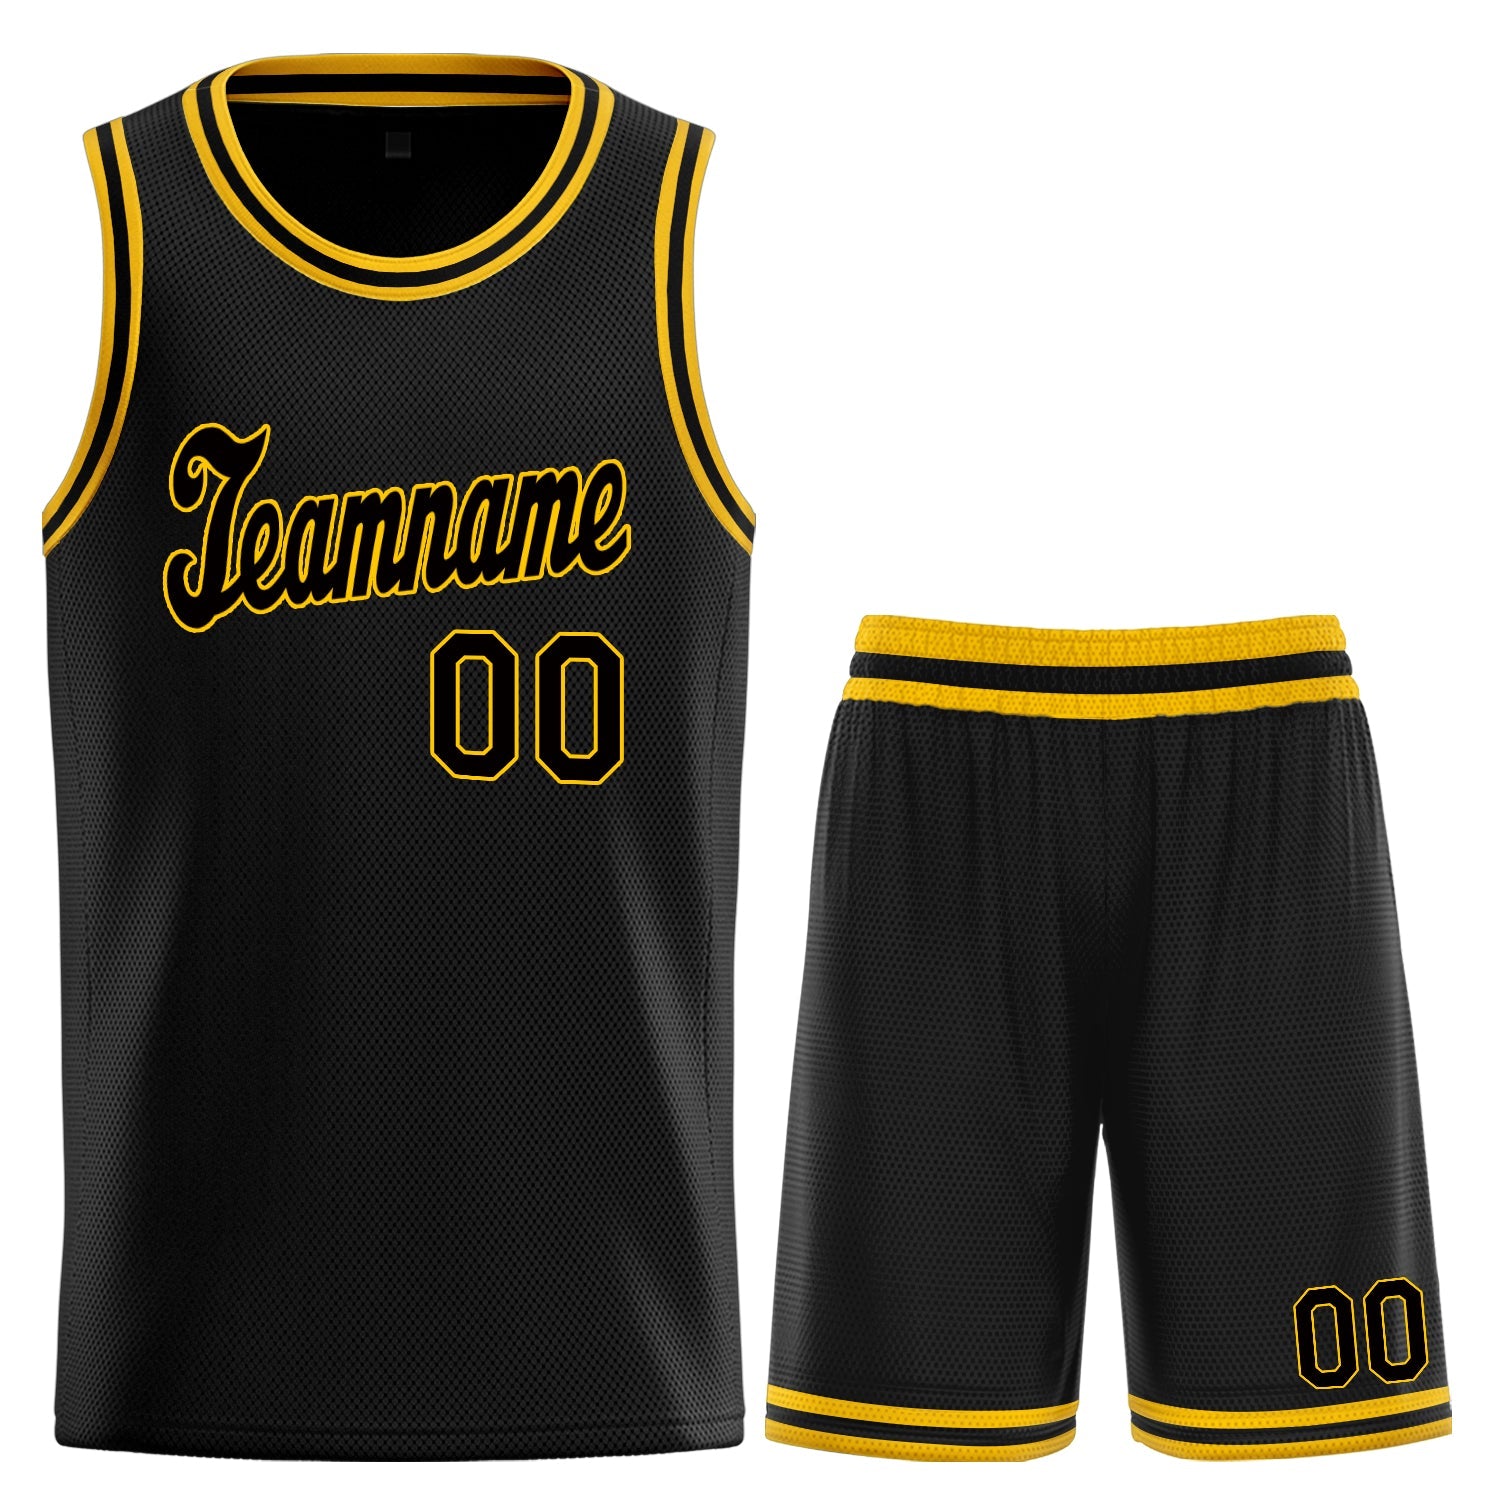 KXK Black and Yellow Basketball Jersey,Basketball Yellow Jersey - KXKSHOP